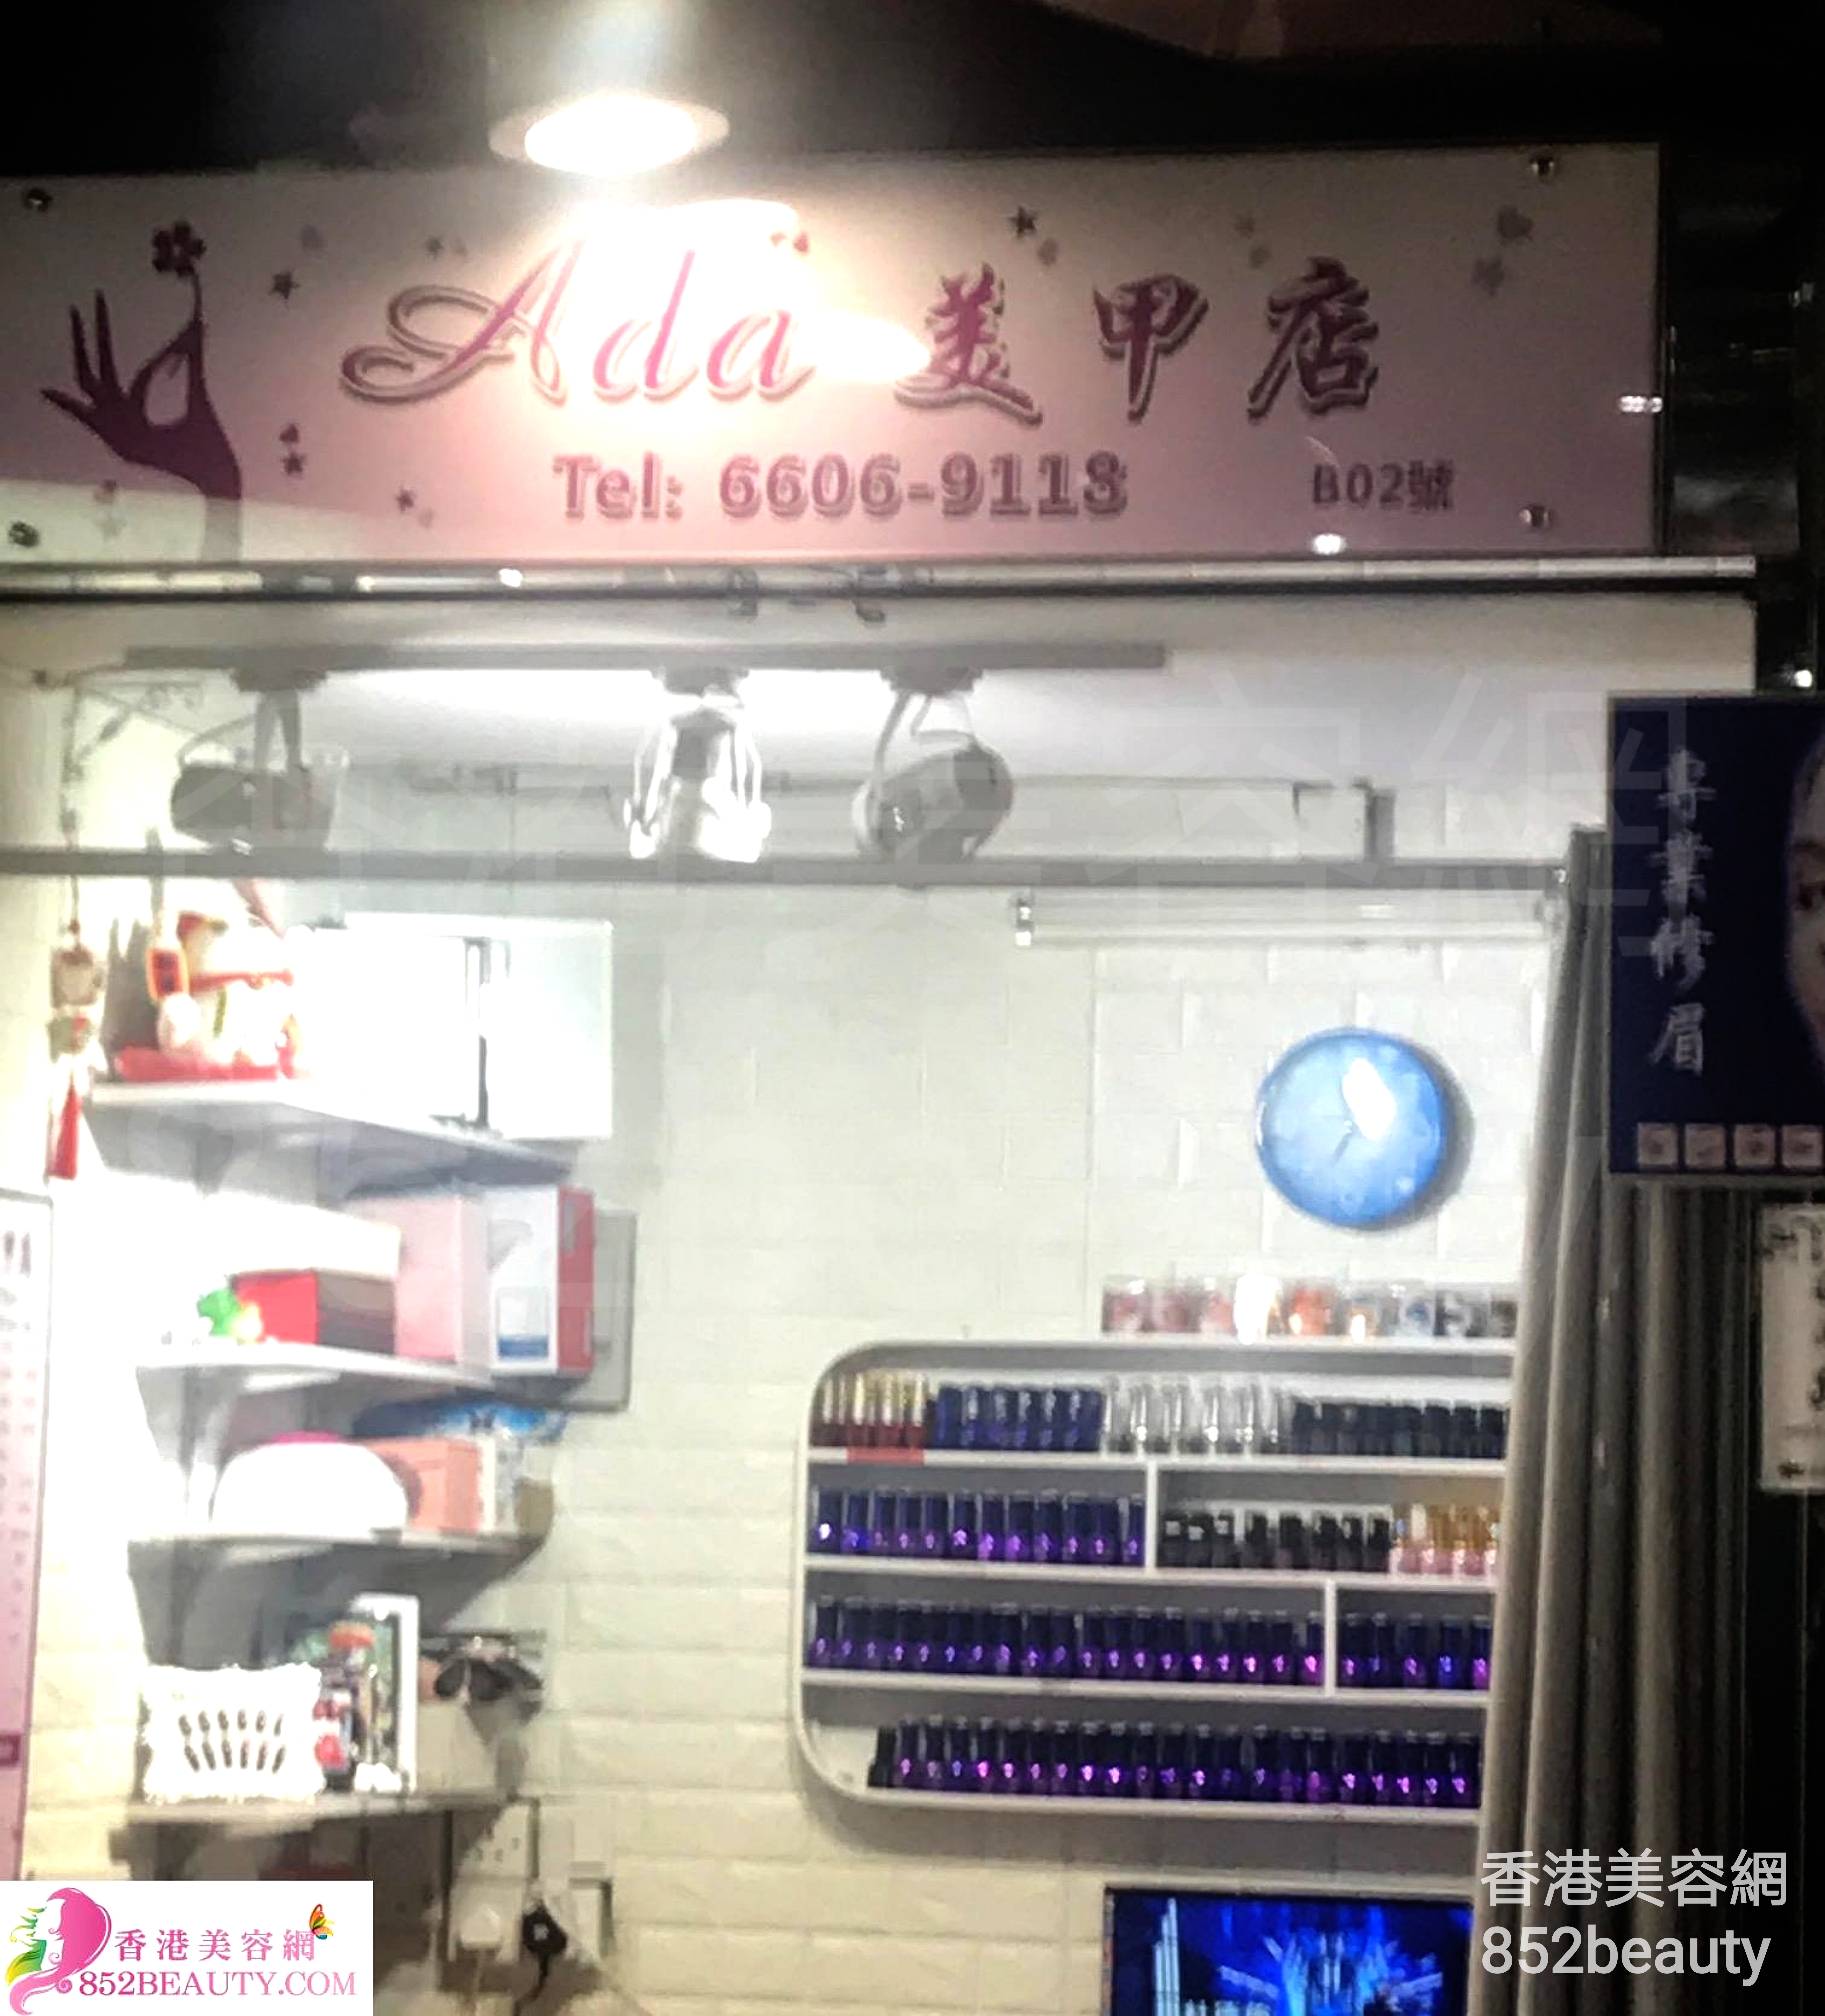 香港美容網 Hong Kong Beauty Salon 美容院 / 美容師: Ada 美甲店